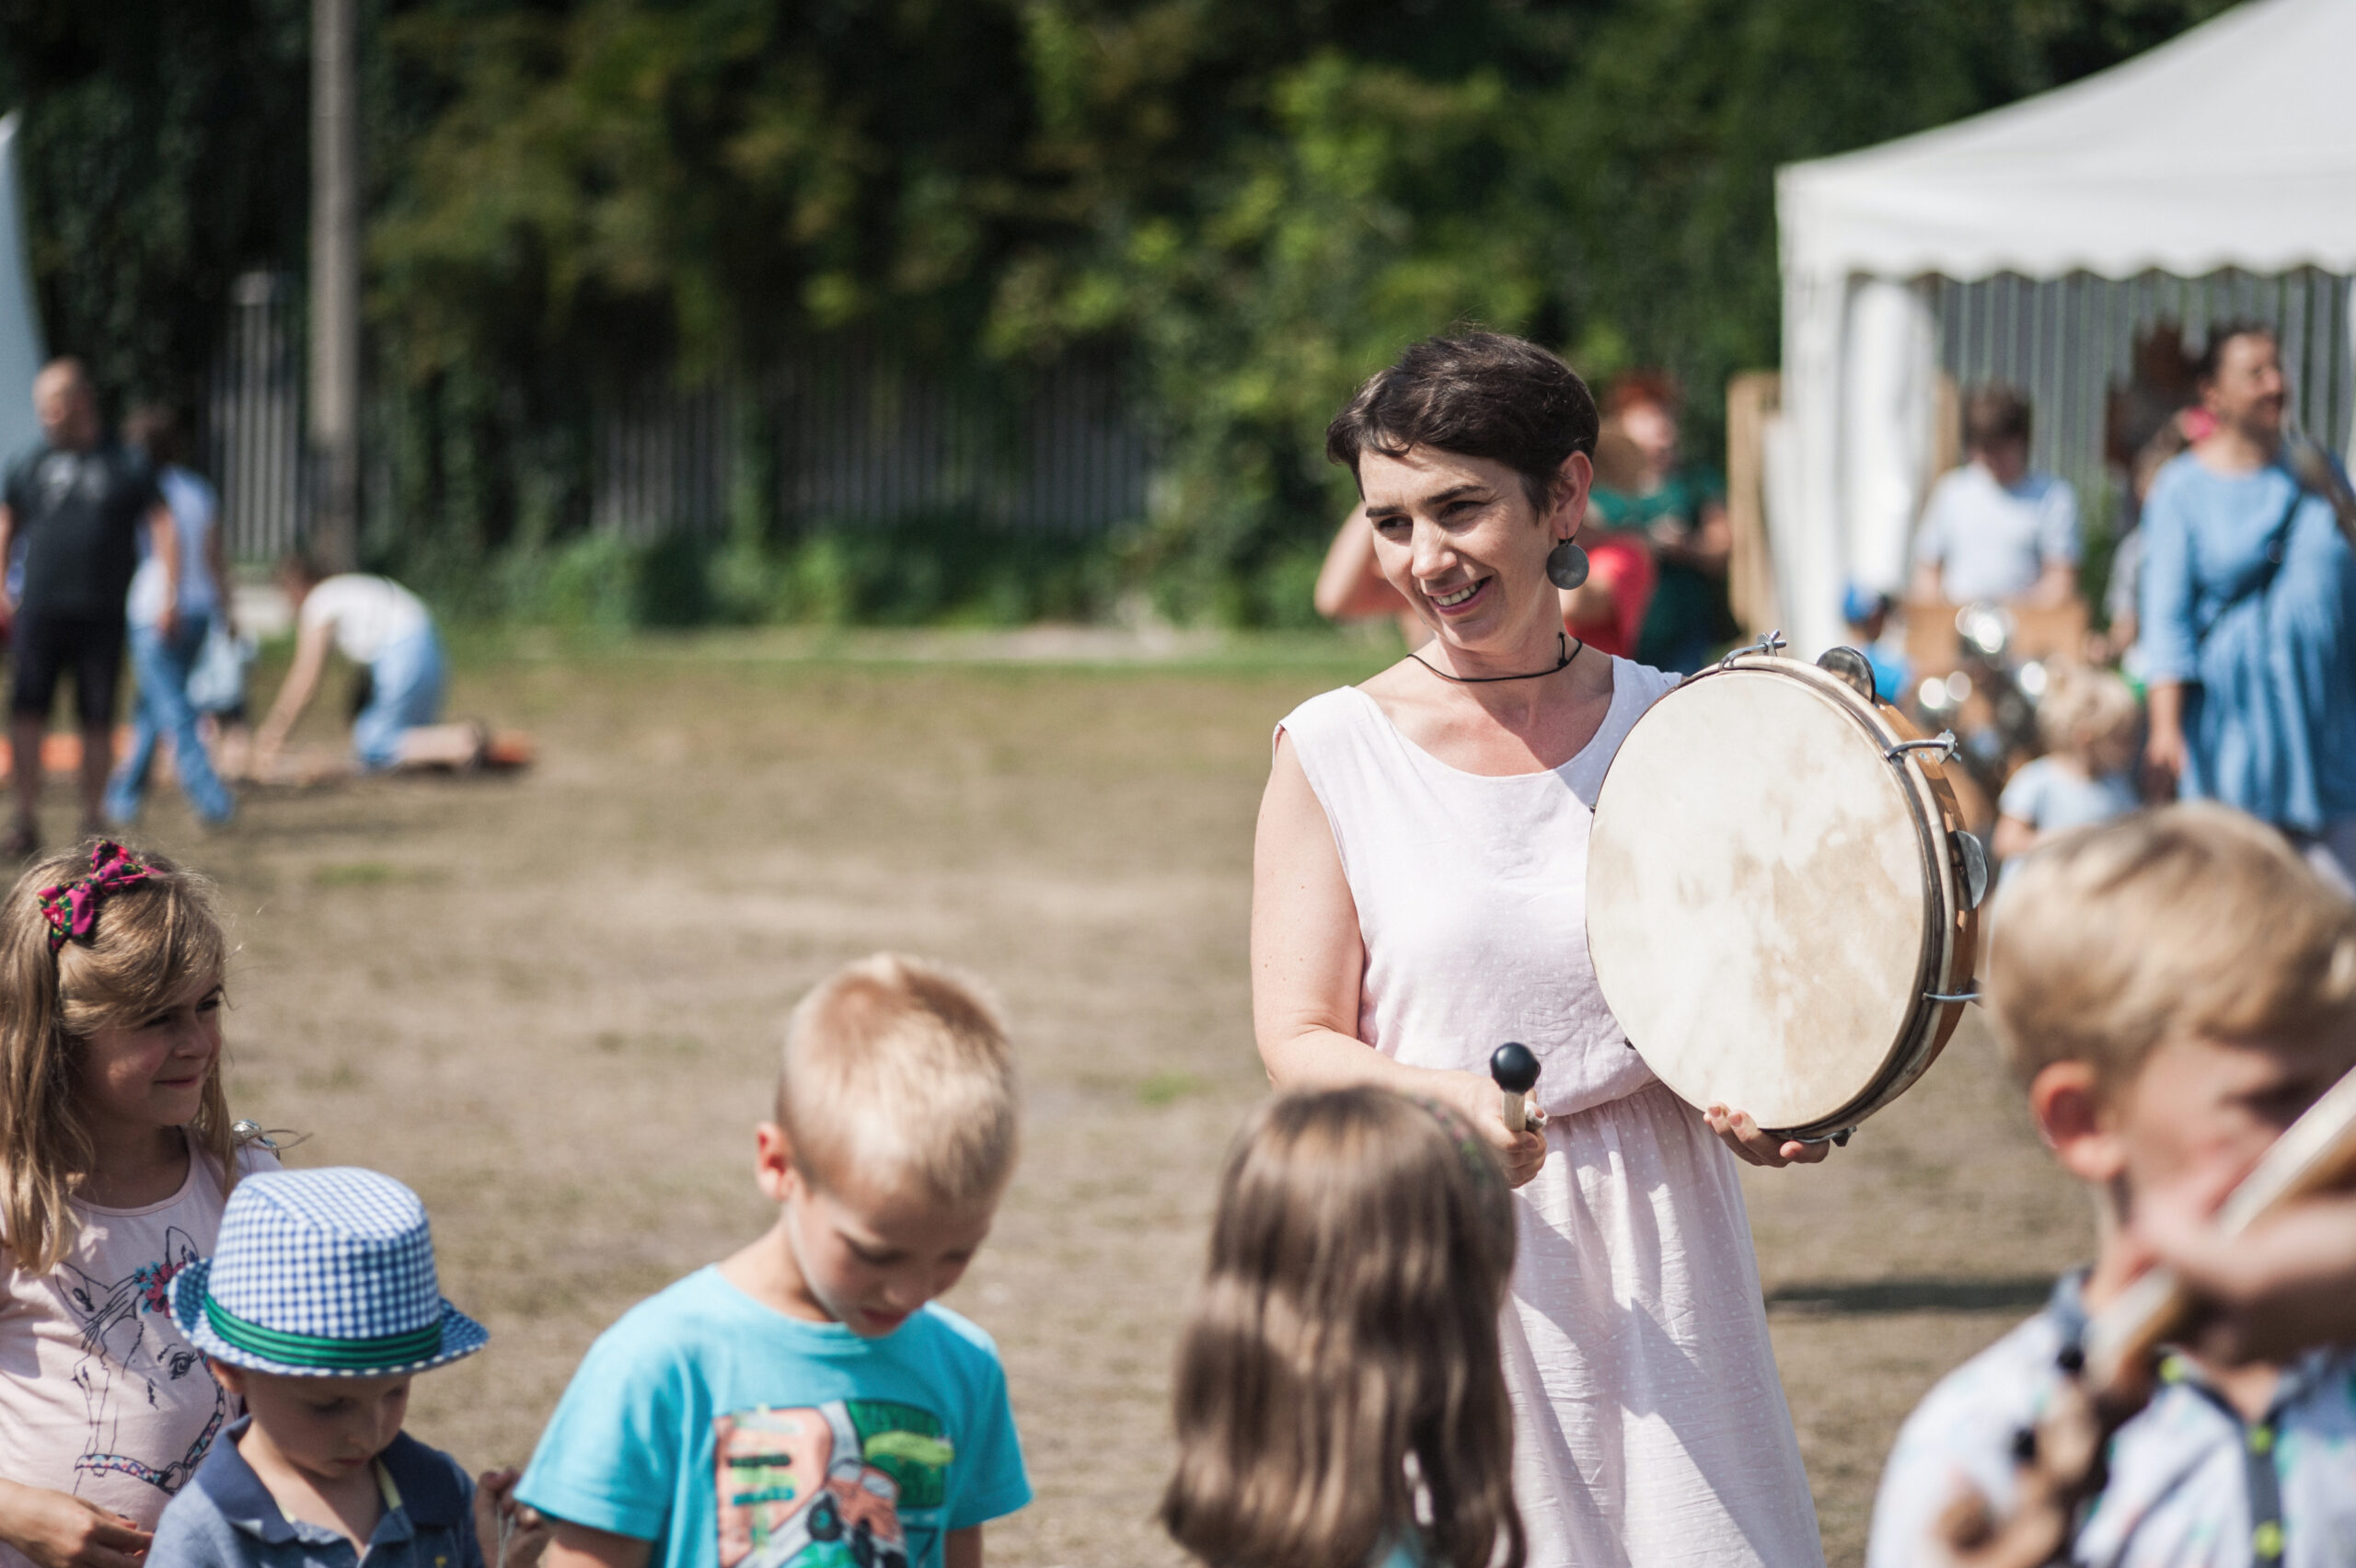 Marta Urban-Burdalska, uśmiechnięta kobieta z krótkimi czarnymi włosami trzyma w rękach bęben i pałeczkę, za pomocą której gra. Przed kobietą stoją dzieci.